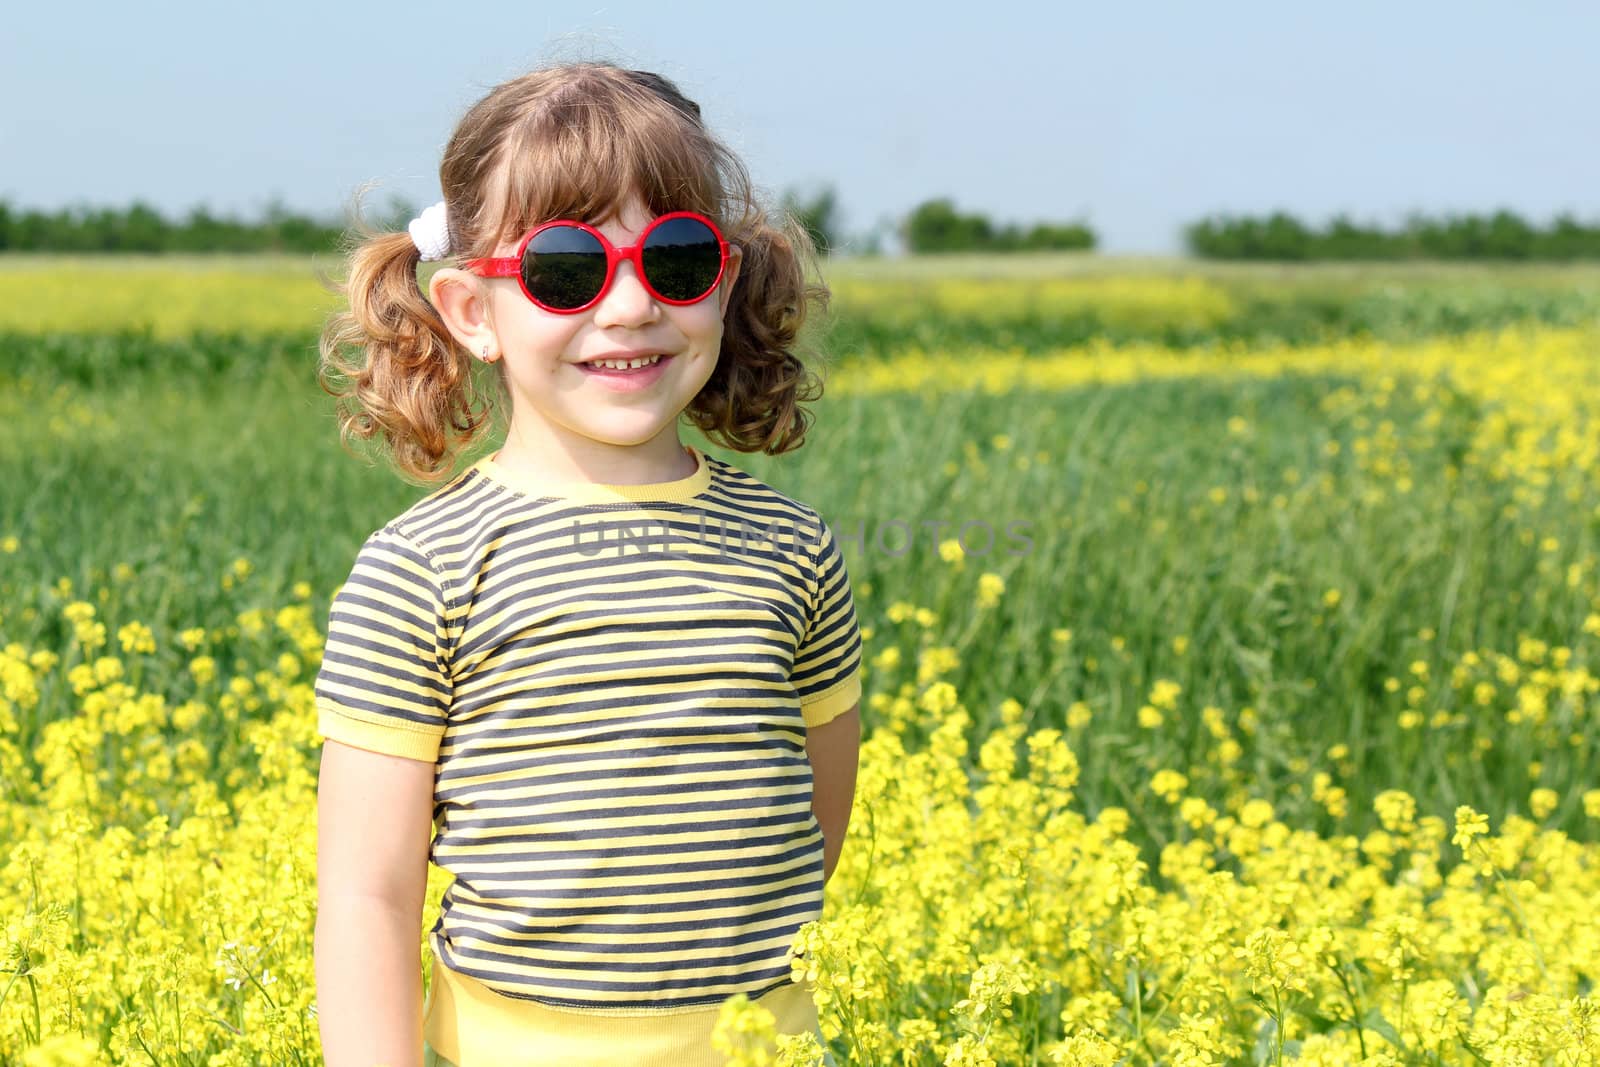 little girl posing in yellow flowers field